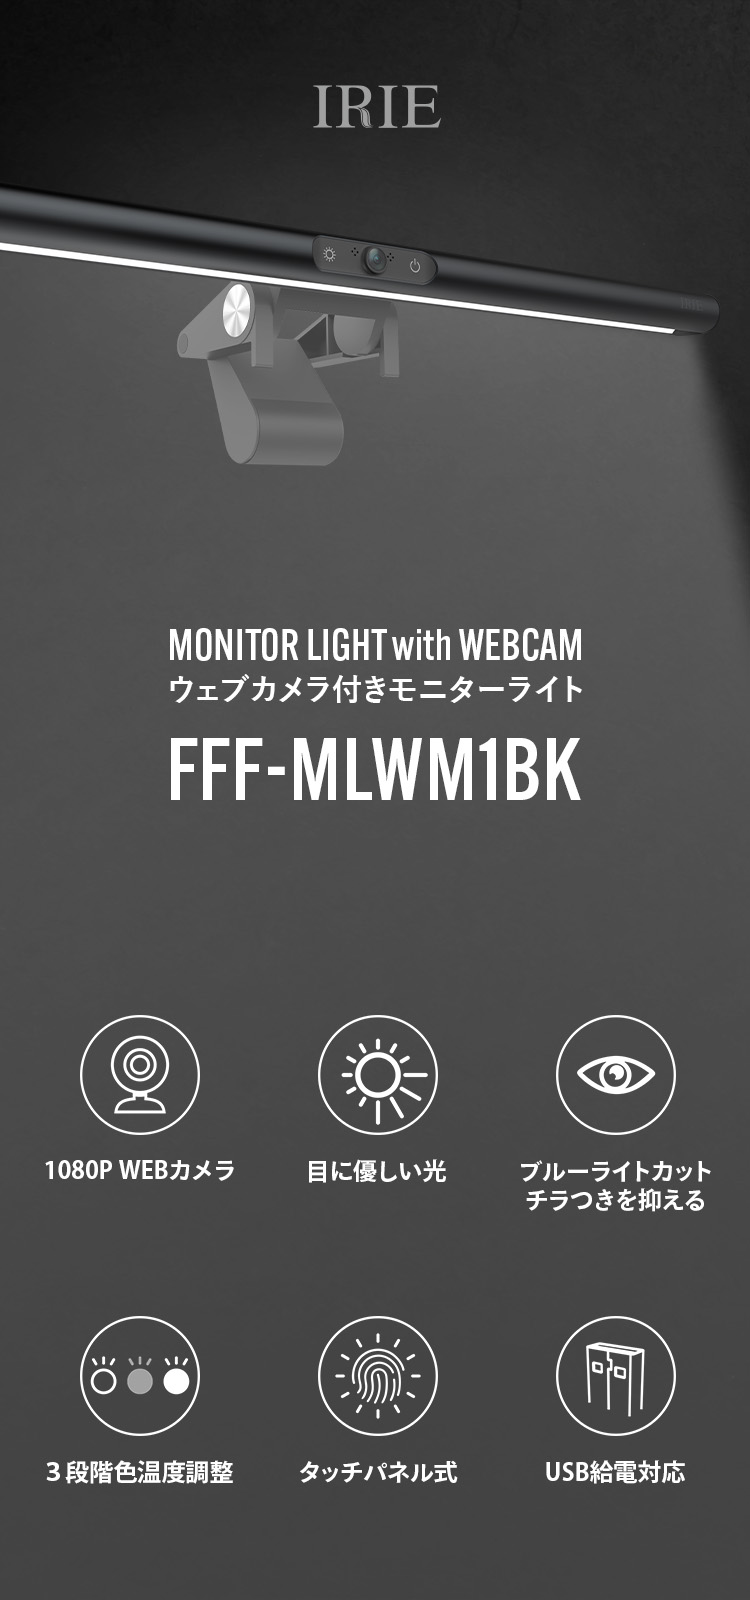 ウェブカメラ付きモニターライト | FFF-WLWM1BK